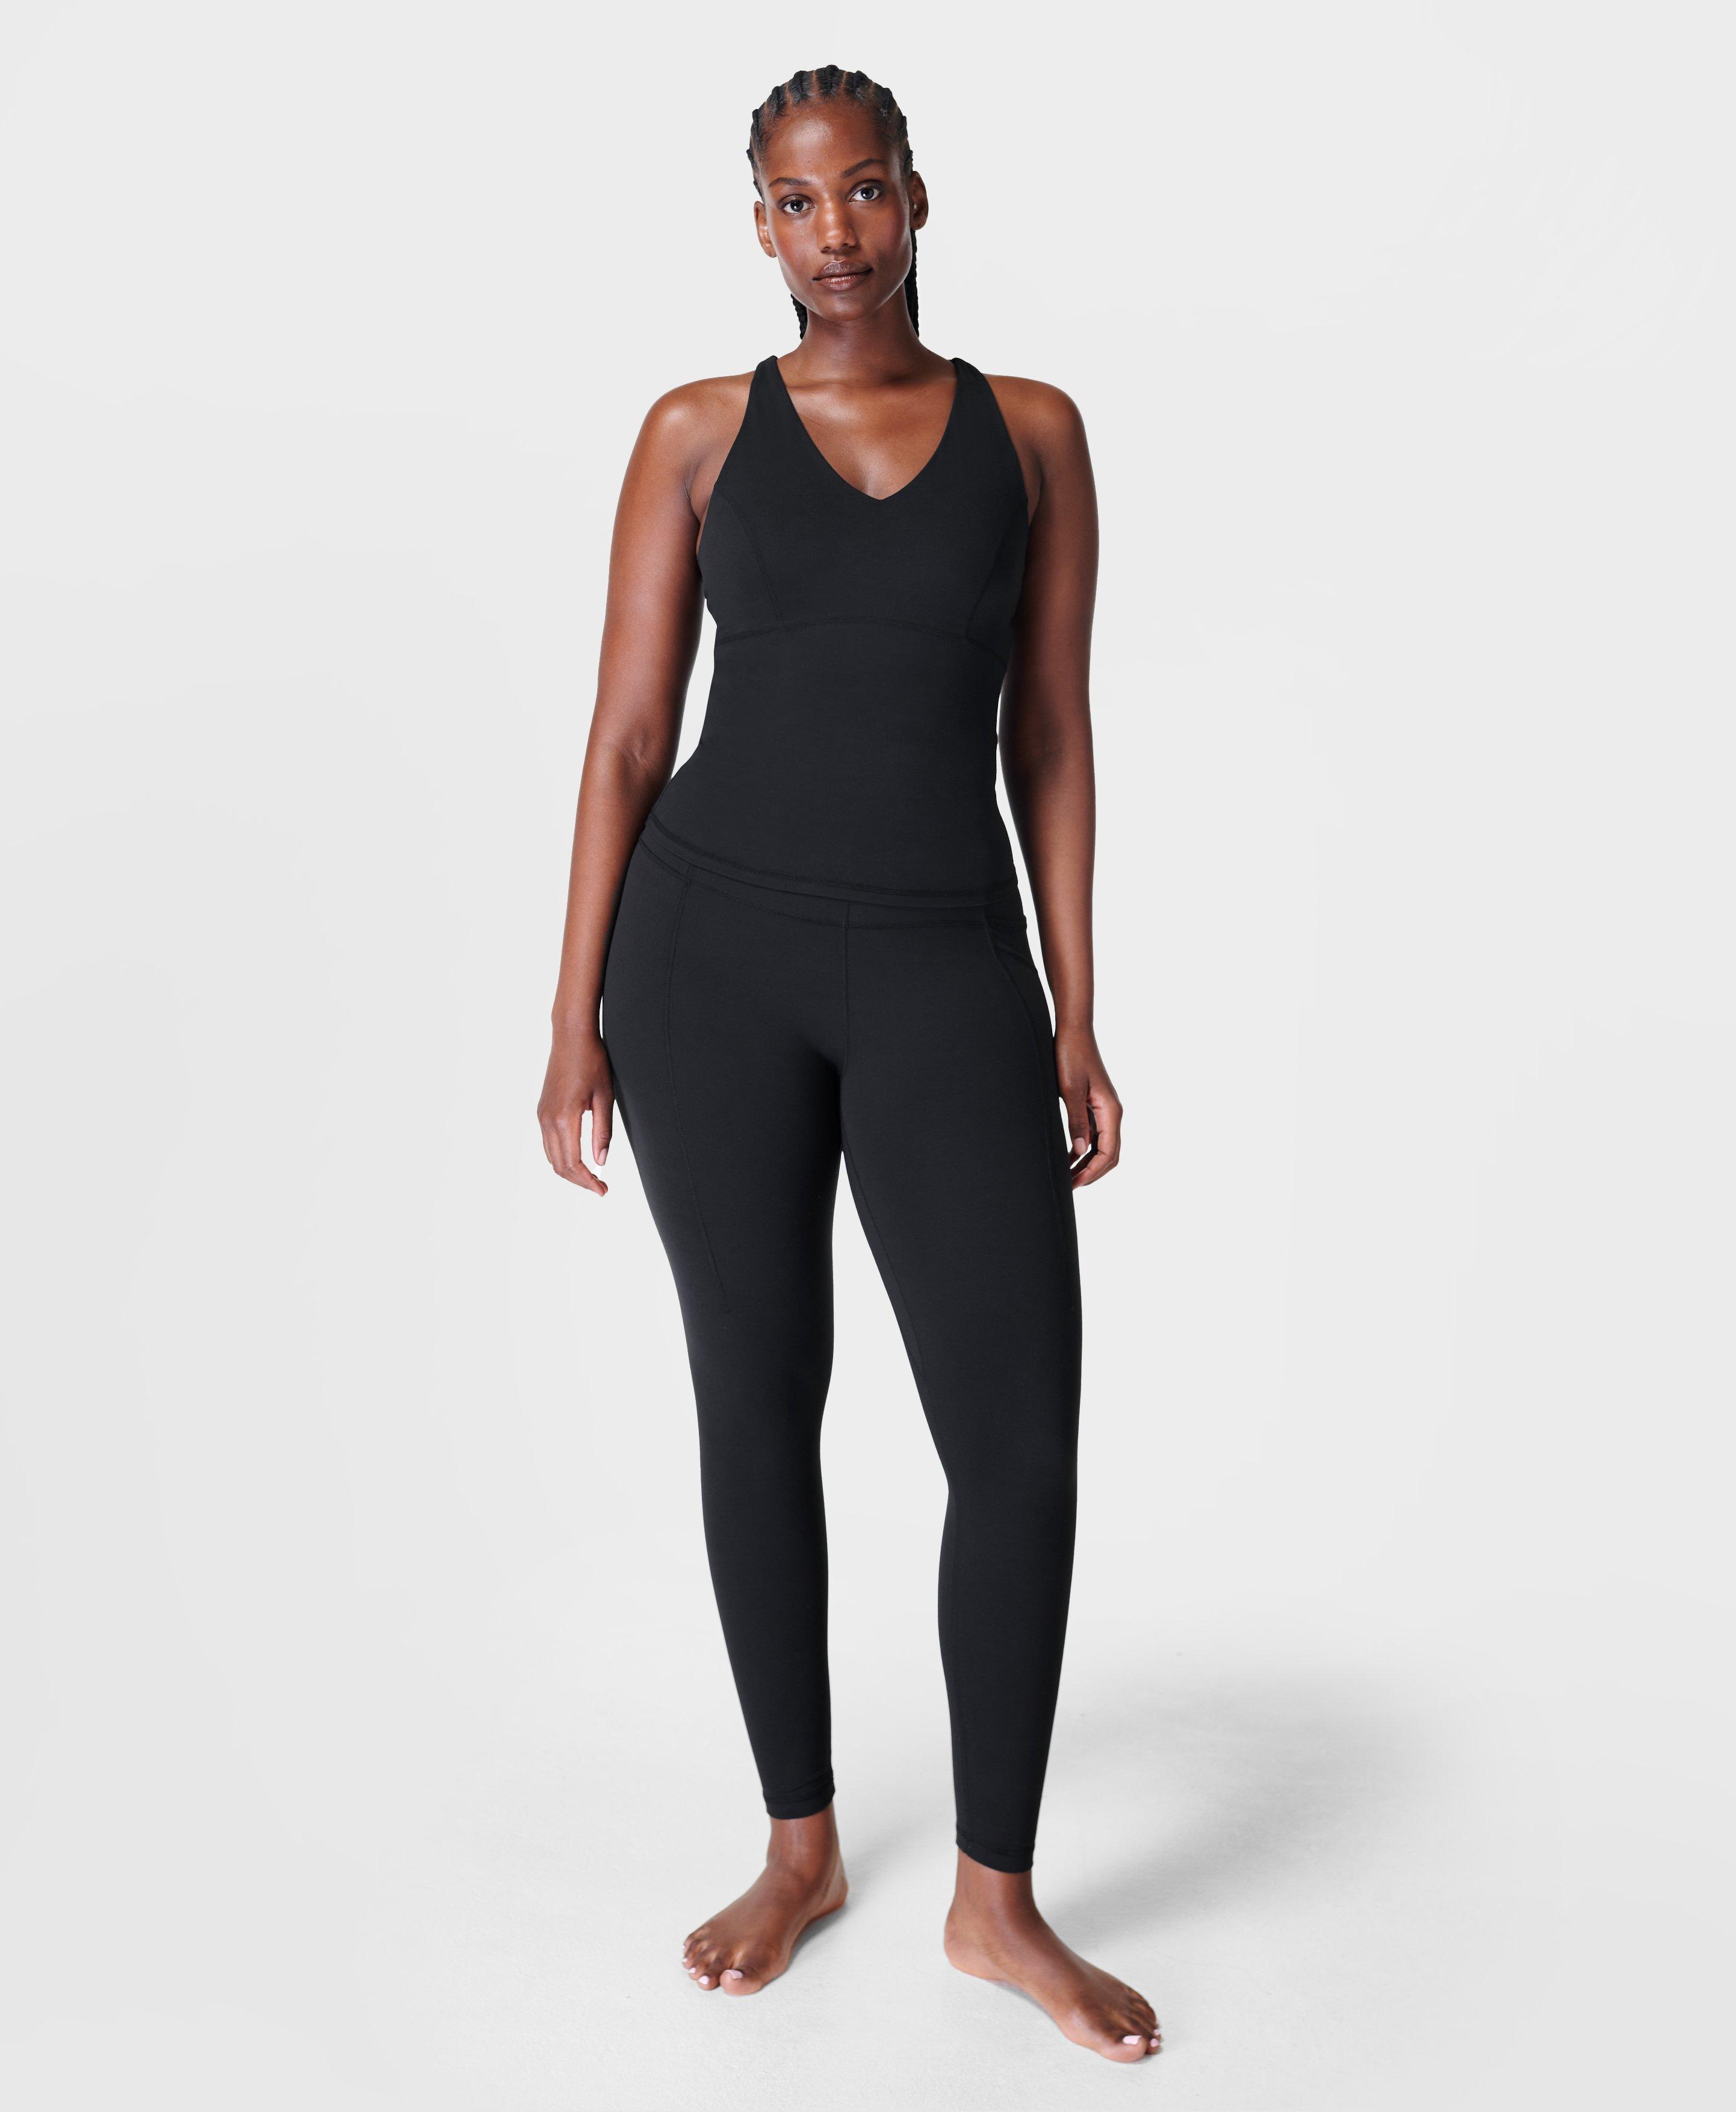 Super Yoga Leggings- black | Women's Leggings | www.sweatybetty.com